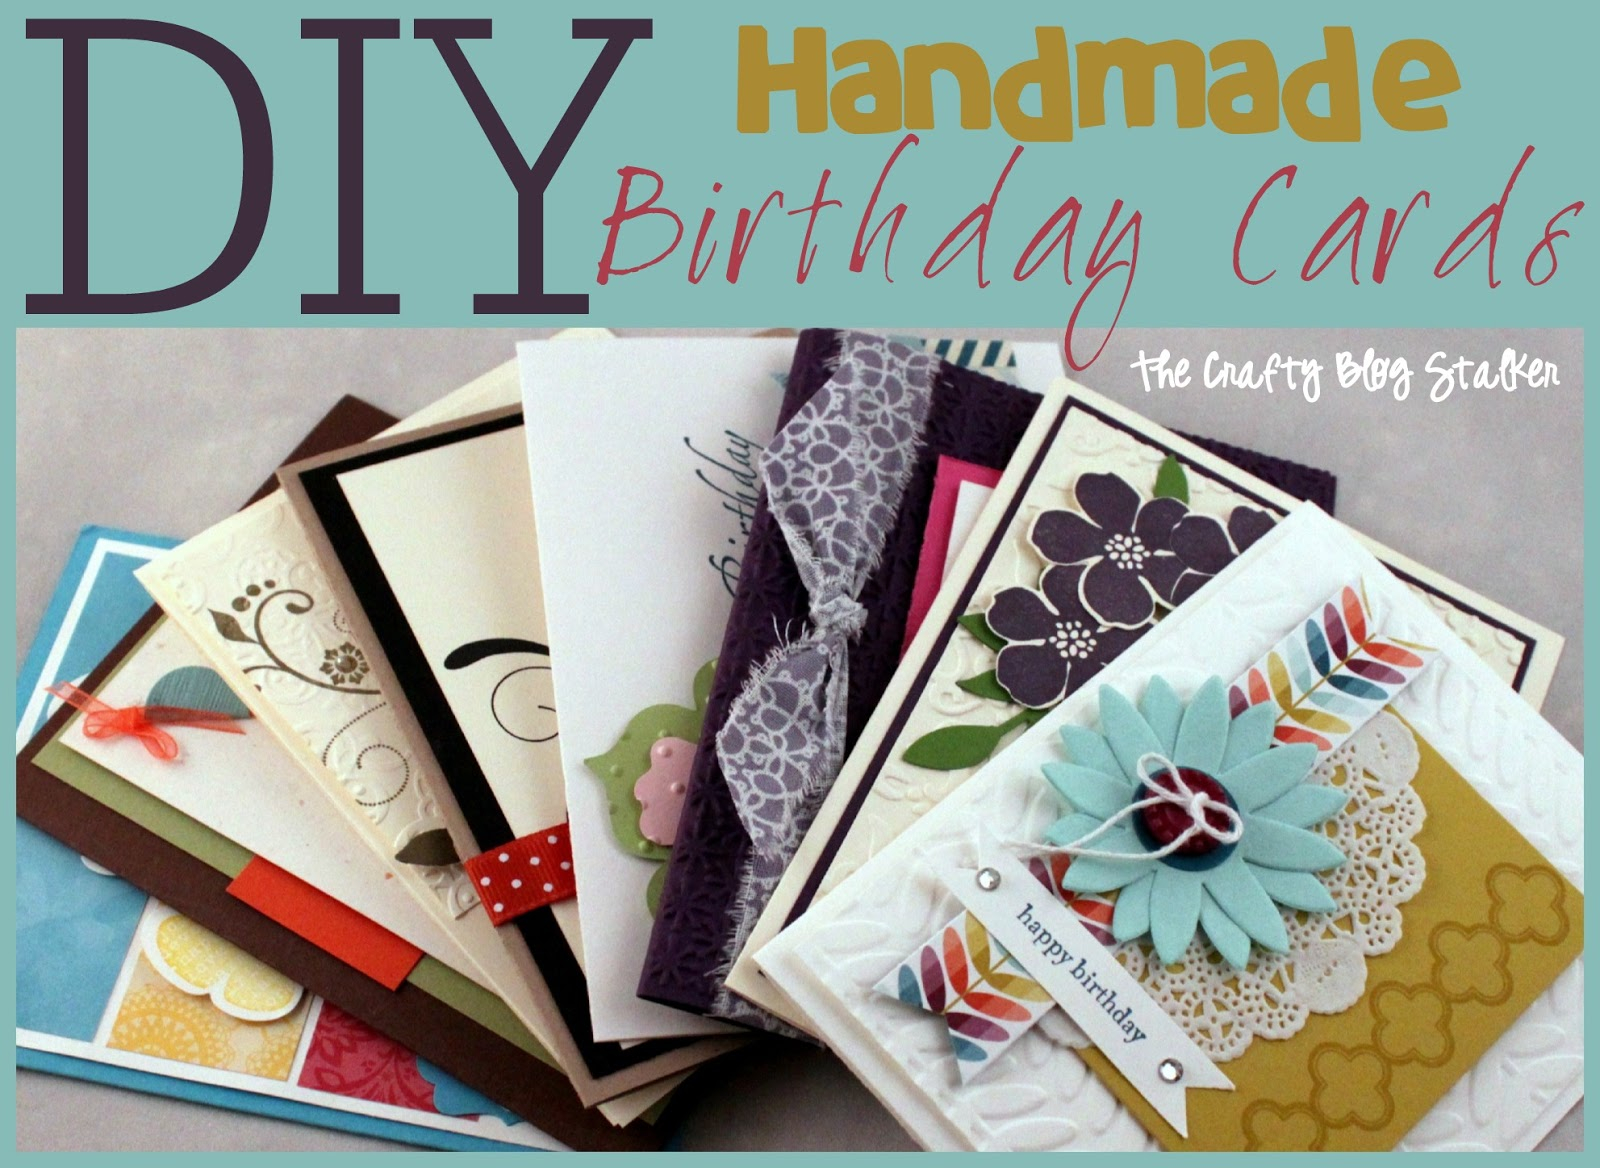 Creative Ideas For Handmade Birthday Cards Handmade Birthday Card Ideas The Crafty Blog Stalker